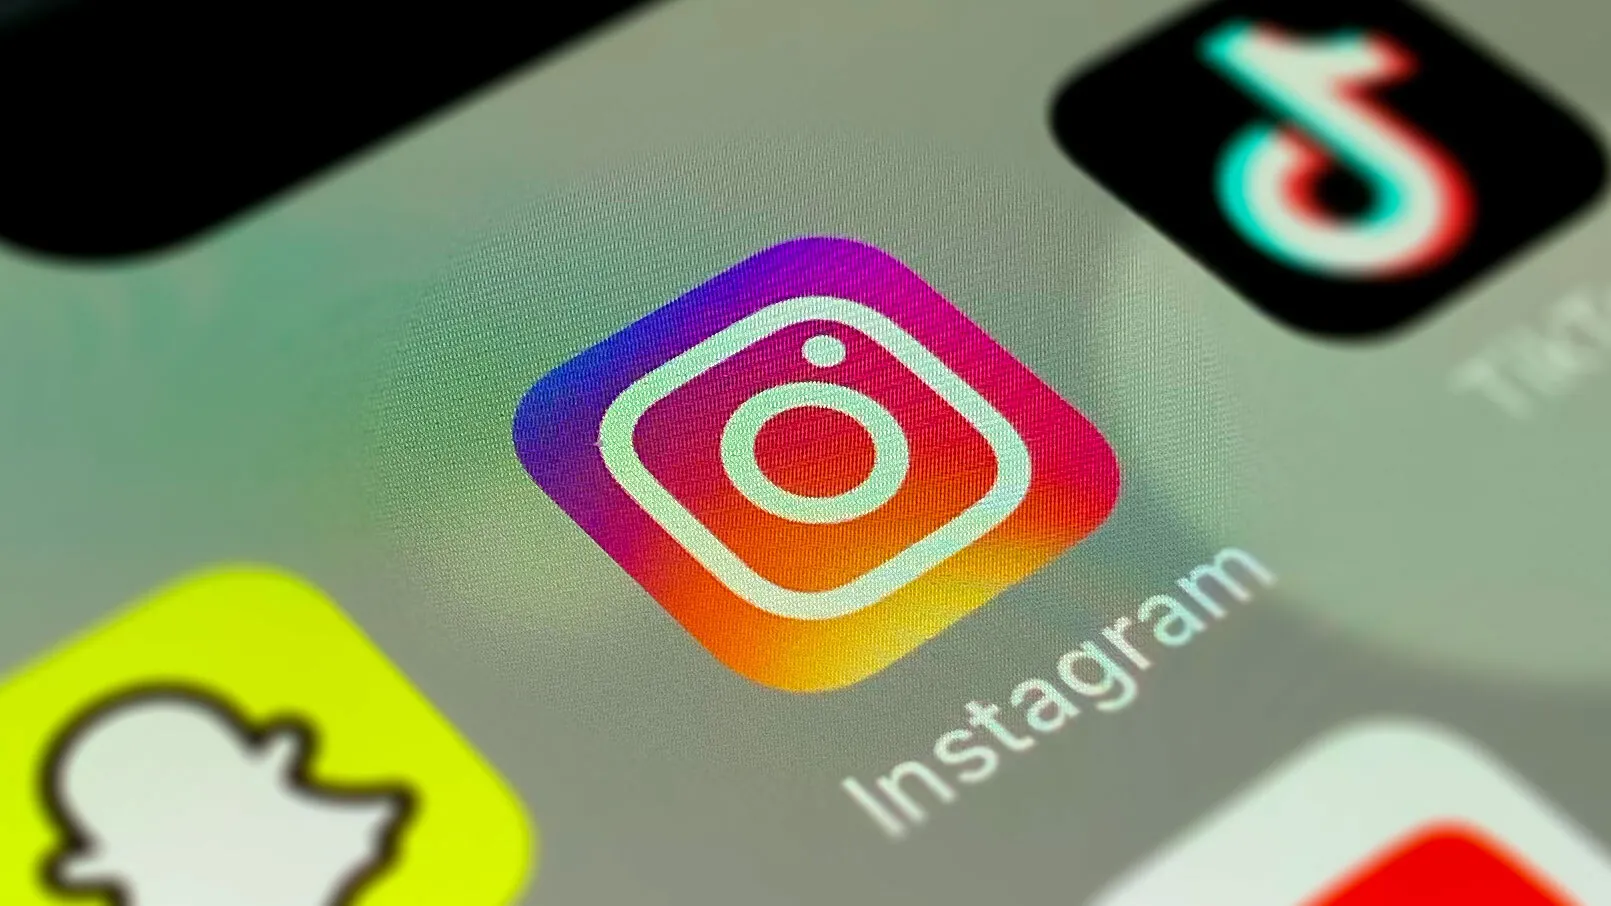 Instagram utvikler tilpassbare "AI-venner" - personaliserte chatboter for sosialt samvær.